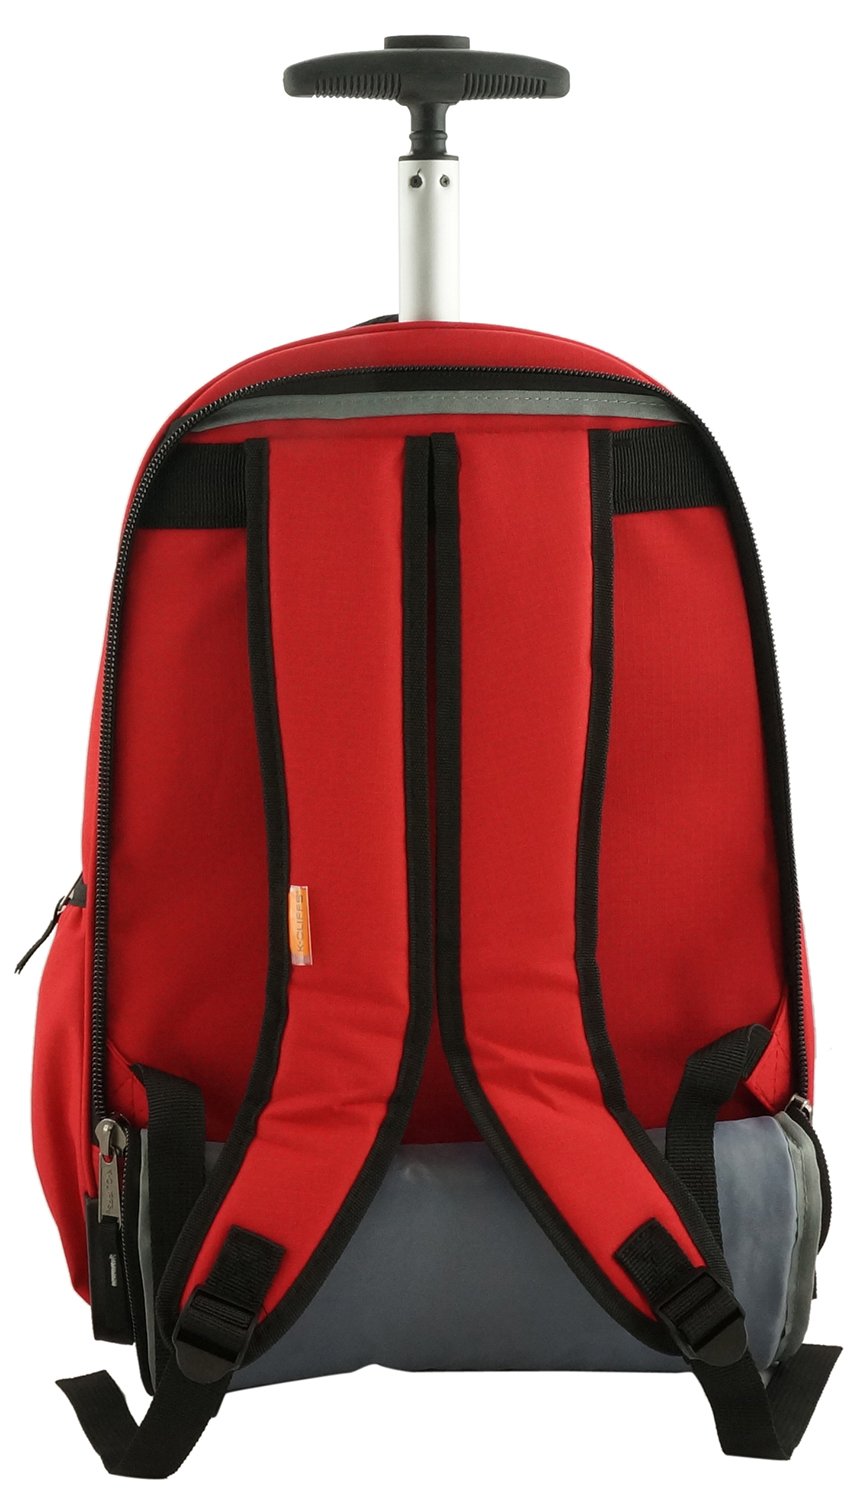 Kids Boys Wheels Backpack Blue Bag Luggage Rolling School Book Pack Trolley  Bags  eBay